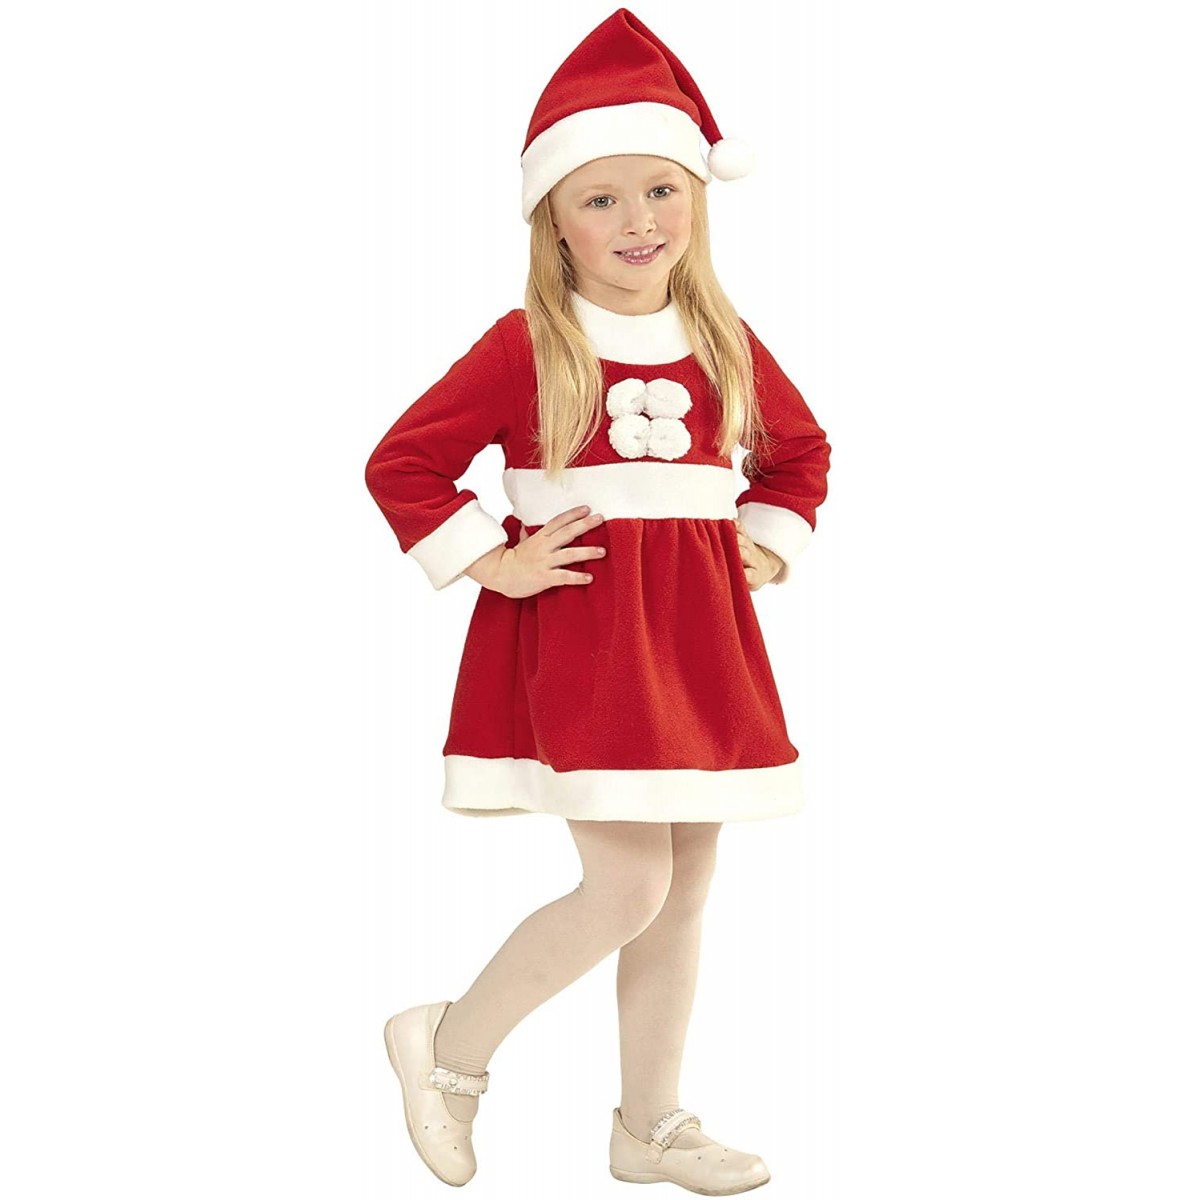 Cappello Vestito Costume di Babbo Natale Bambino Elegante Scialle VICGREY ❤ Outfit Natale Set,Bambino Bambini Bambine Natale Vestiti Costume Partito Abiti 